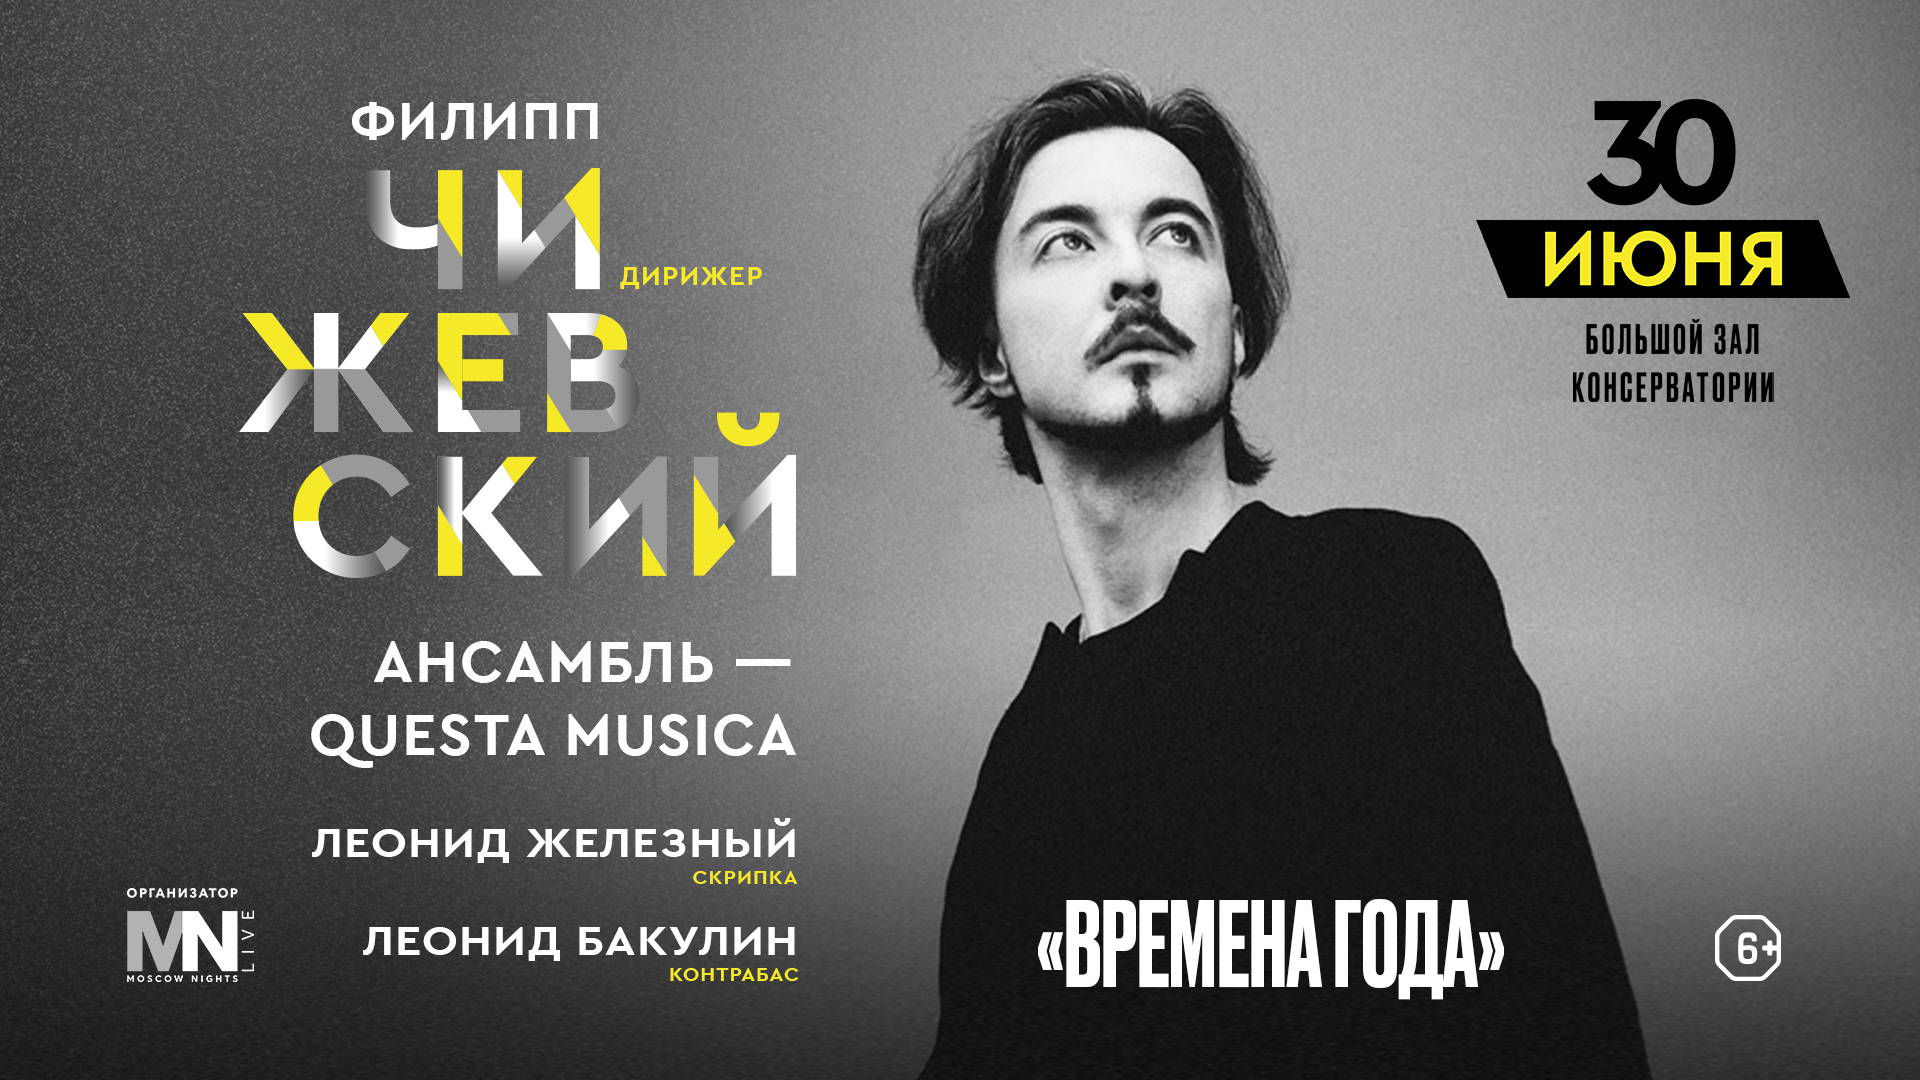 Филипп Чижевский и ансамбль Questa Musica выступят в Московской консерватории